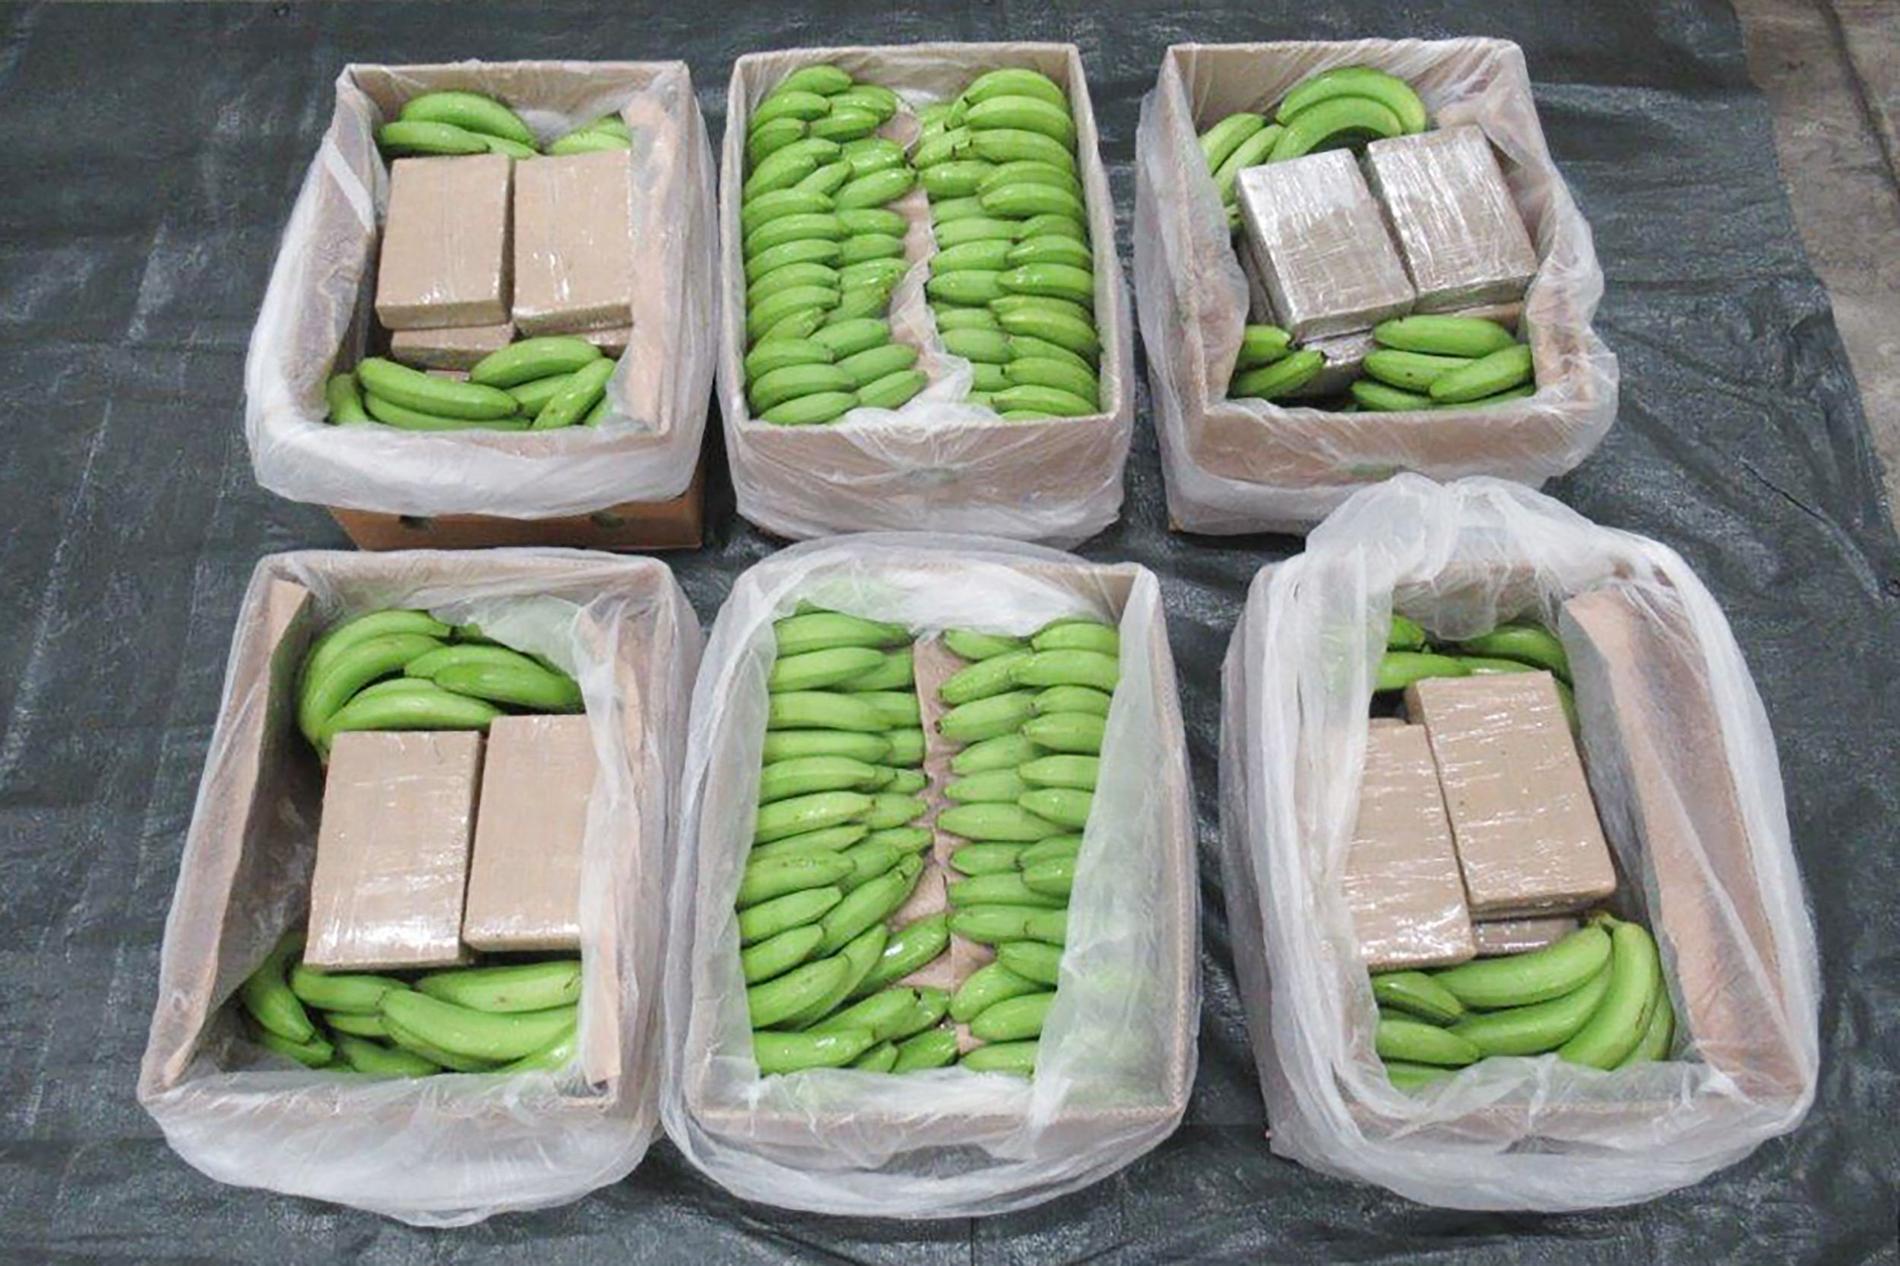 Brittiska polisens rekordtillslag där kokainet hittades i bananlasten.